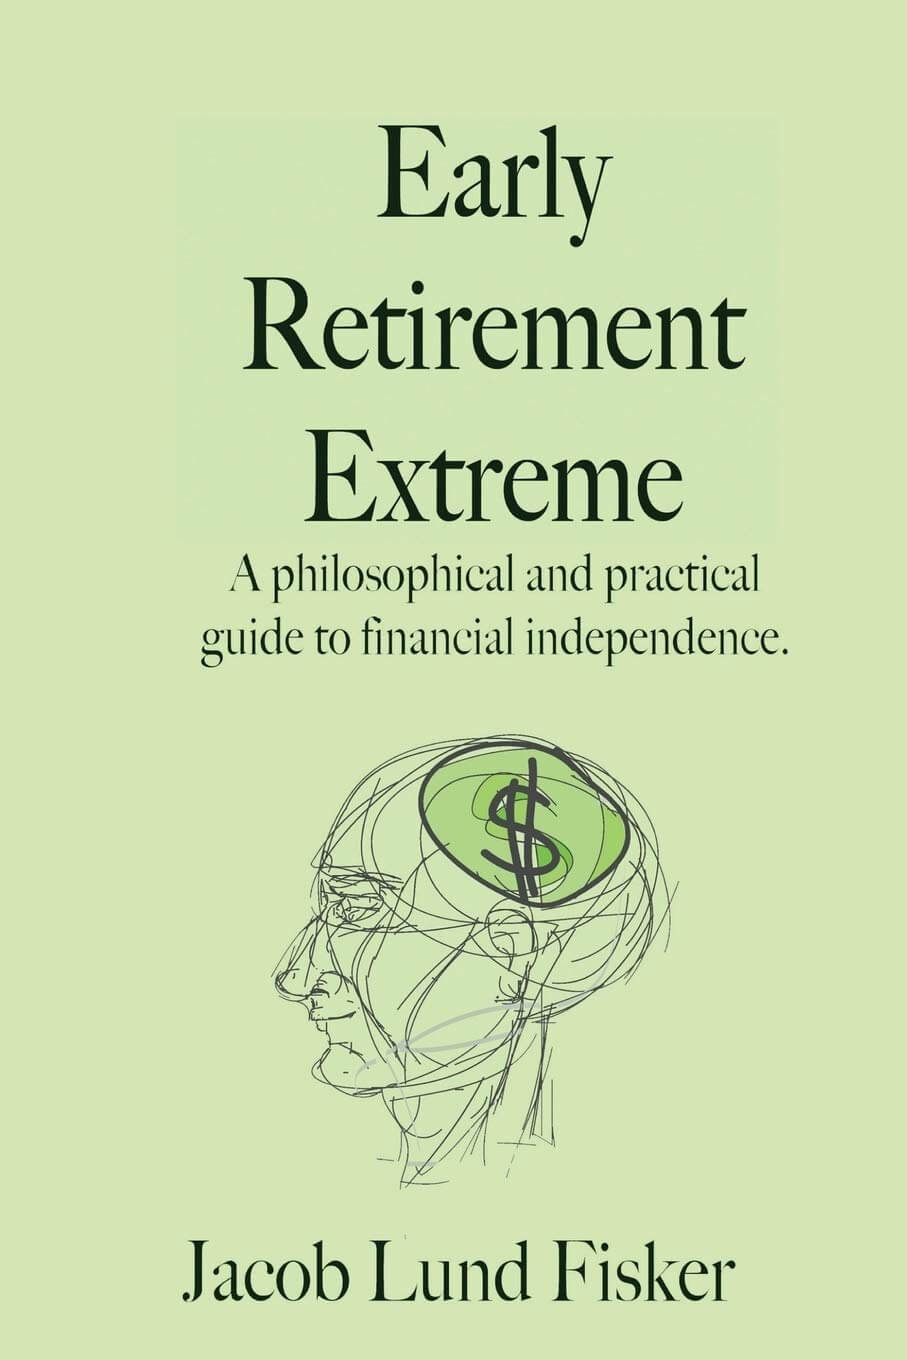 Wesentliches Buch der FIRE-Bewegung: Early Retirement Extreme von Jacob Lund Fisker - Wie sich finanzielle Unabhängigkeit und Selbstbestimmtheit im Leben erreichen lässt (Amazon)